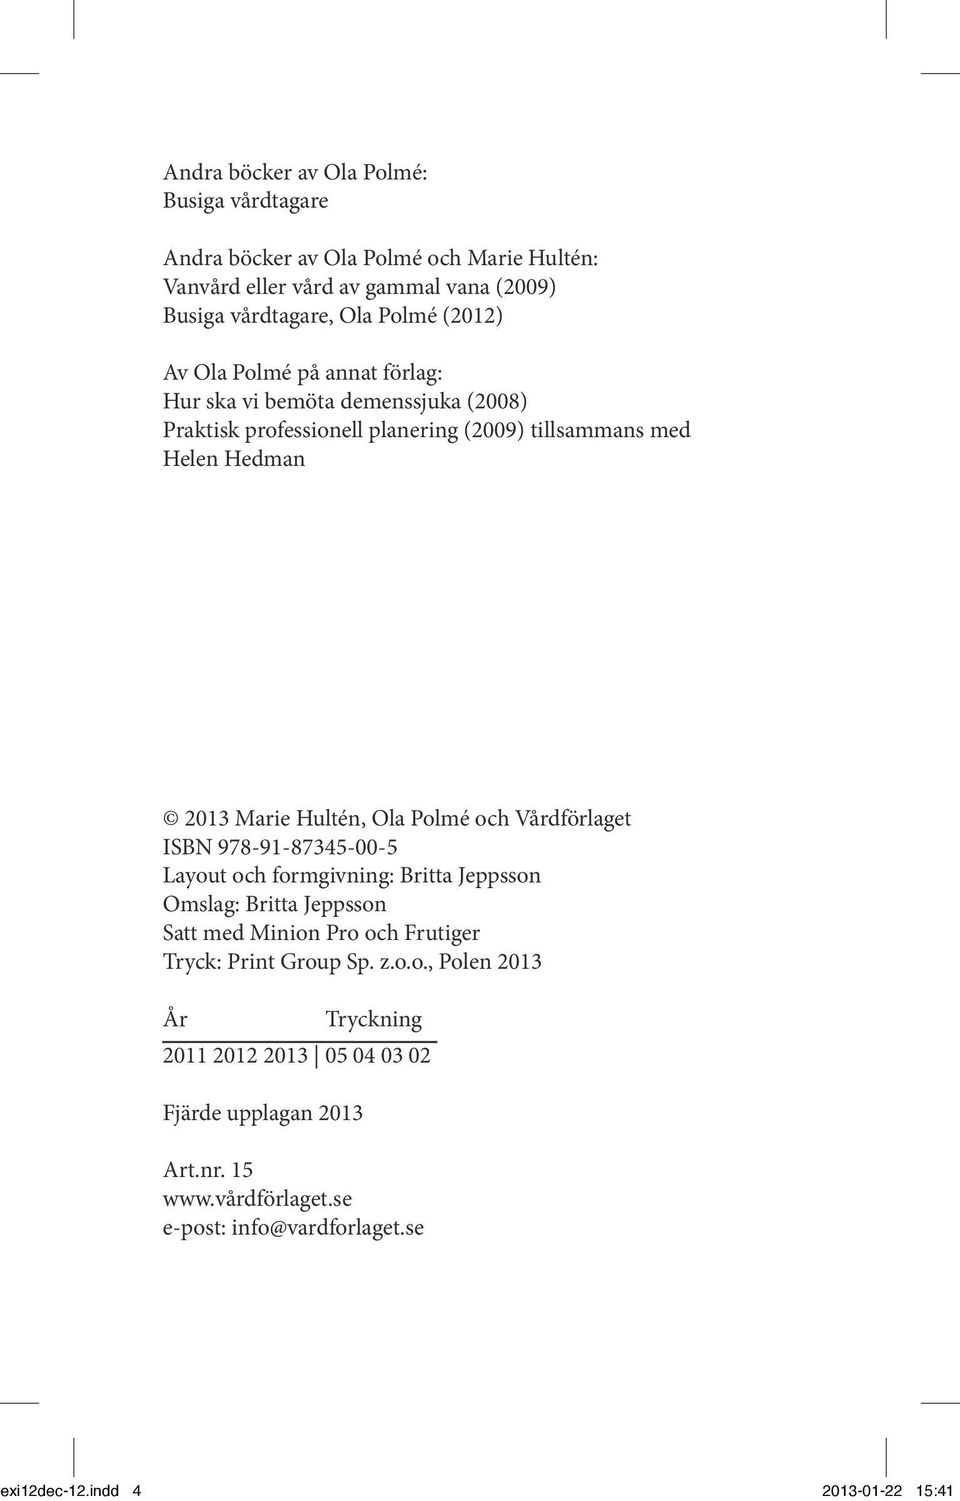 och Vårdförlaget ISBN 978-91-87345-00-5 Layout och formgivning: Britta Jeppsson Omslag: Britta Jeppsson Satt med Minion Pro och Frutiger Tryck: Print Group Sp. z.o.o., Polen 2013 År Tryckning 2011 2012 2013 05 04 03 02 Fjärde upplagan 2013 Art.